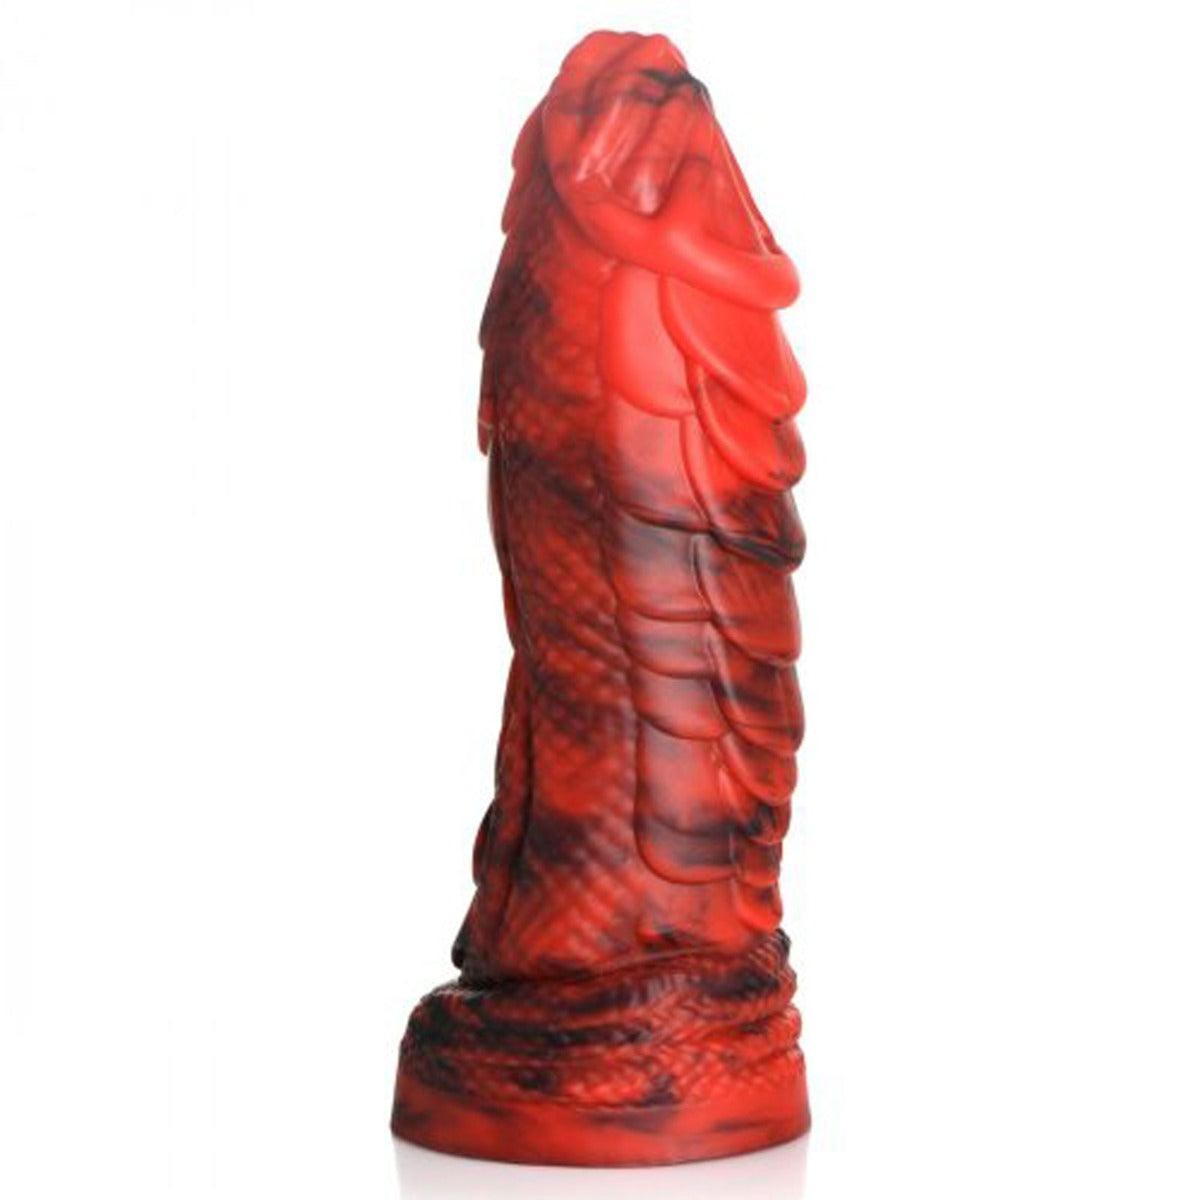 Creature Cock Fire Dragon Red Scaly Silicone Dildo